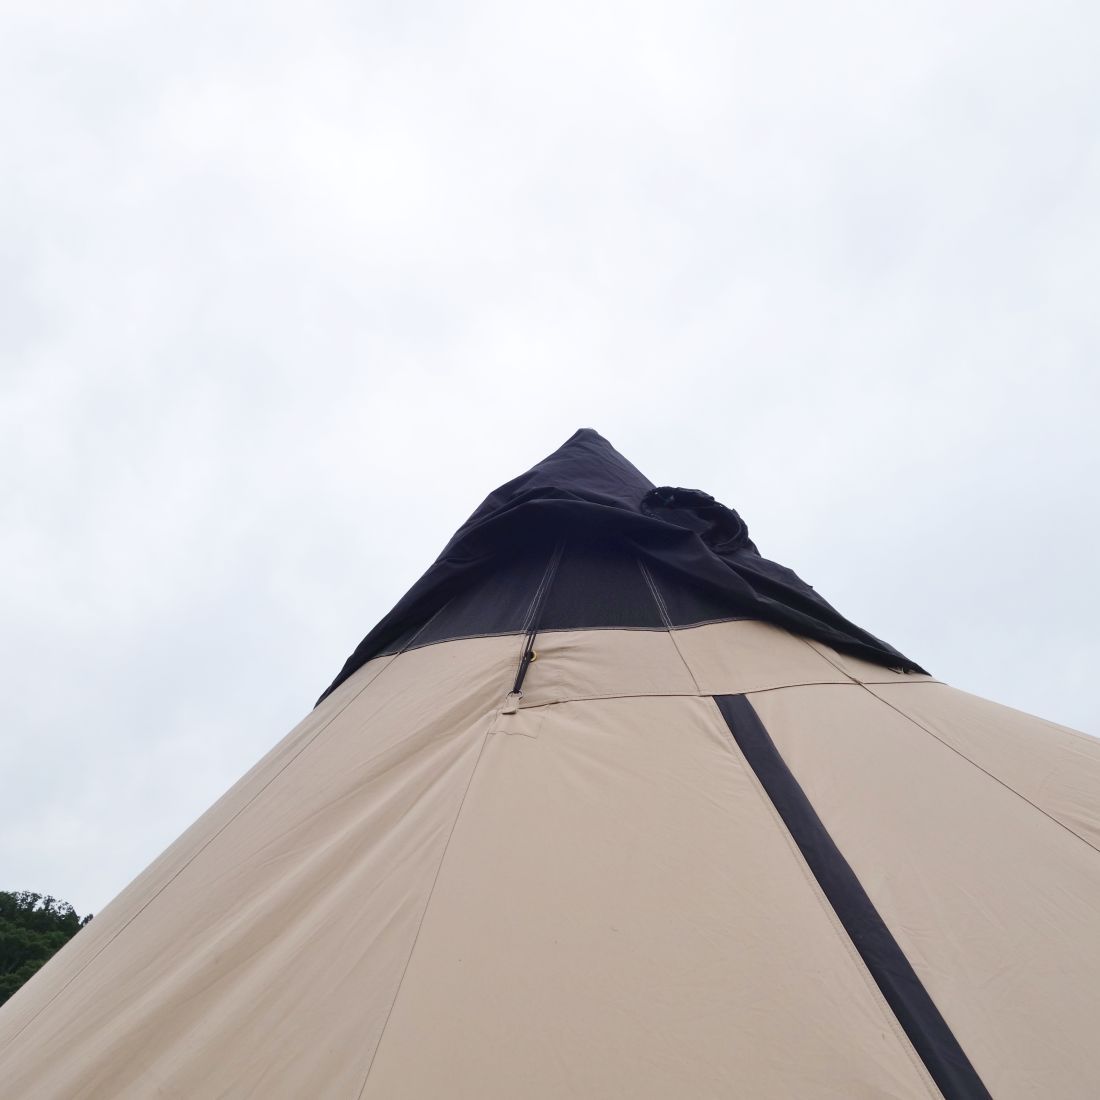 ローベンス ROBENS CHINOOK URSA チヌーク ウルサ フットプリント インナーテント セット テント キャンプ アウトドア